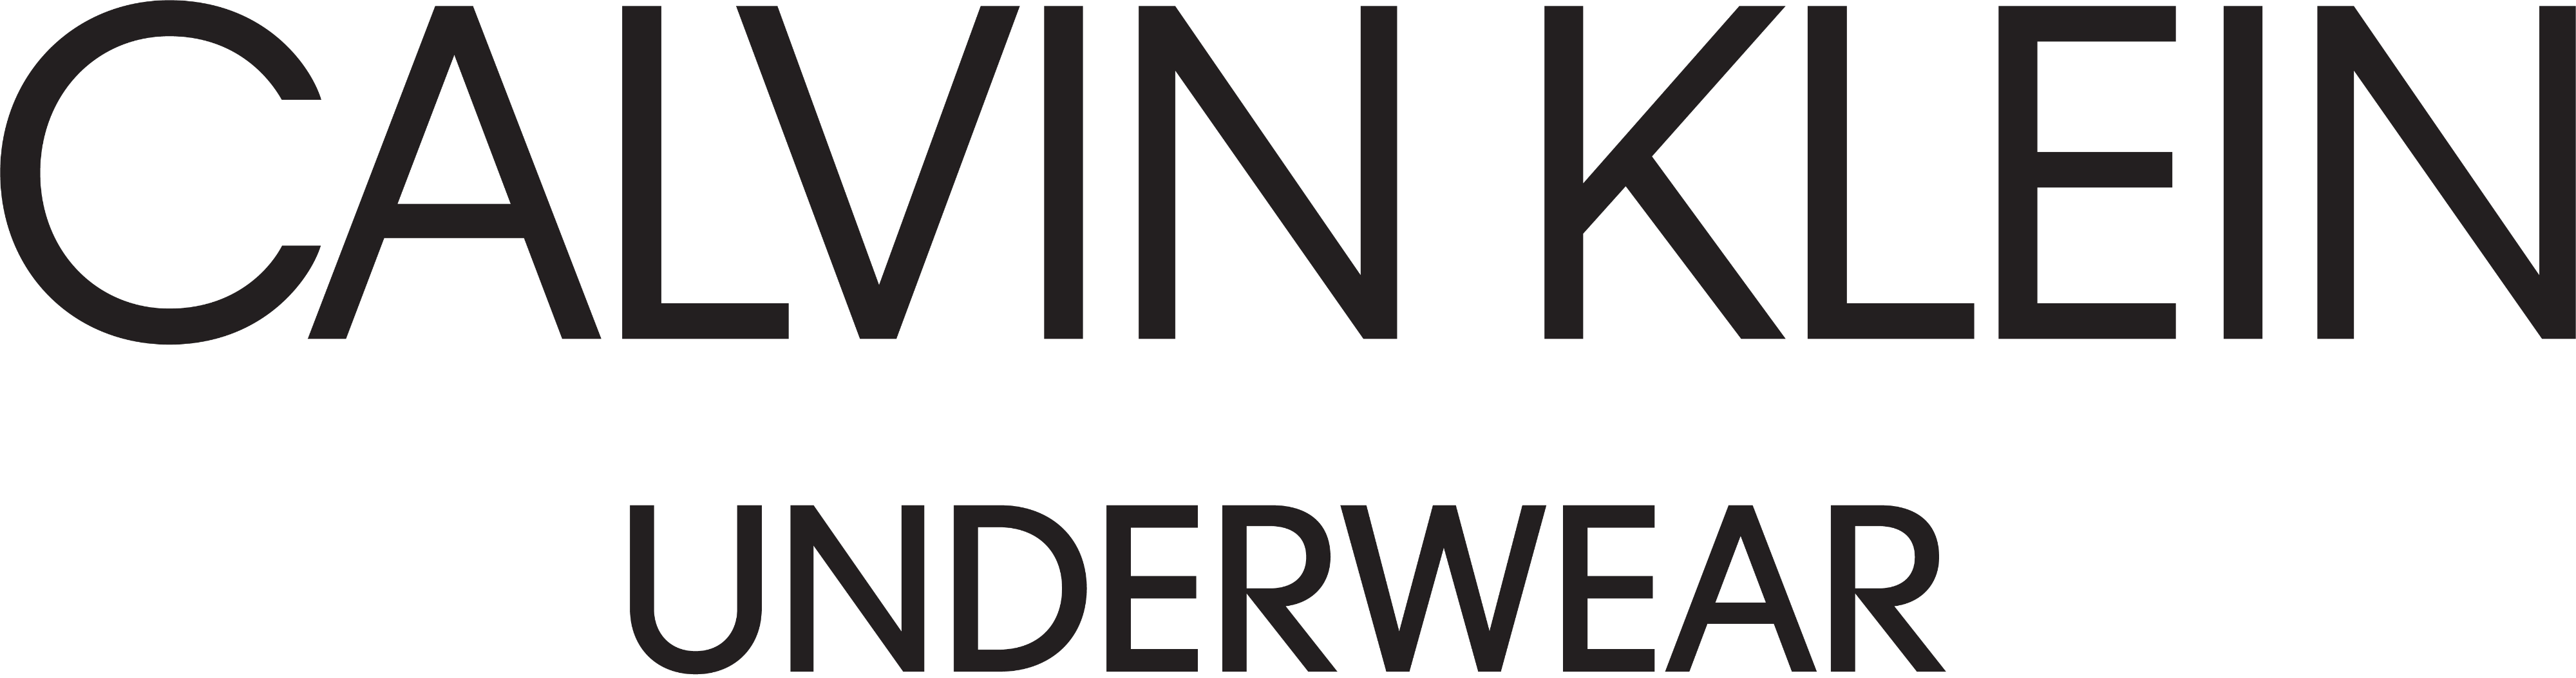 Download PNG image - Calvin Klein Logo PNG Free Download 